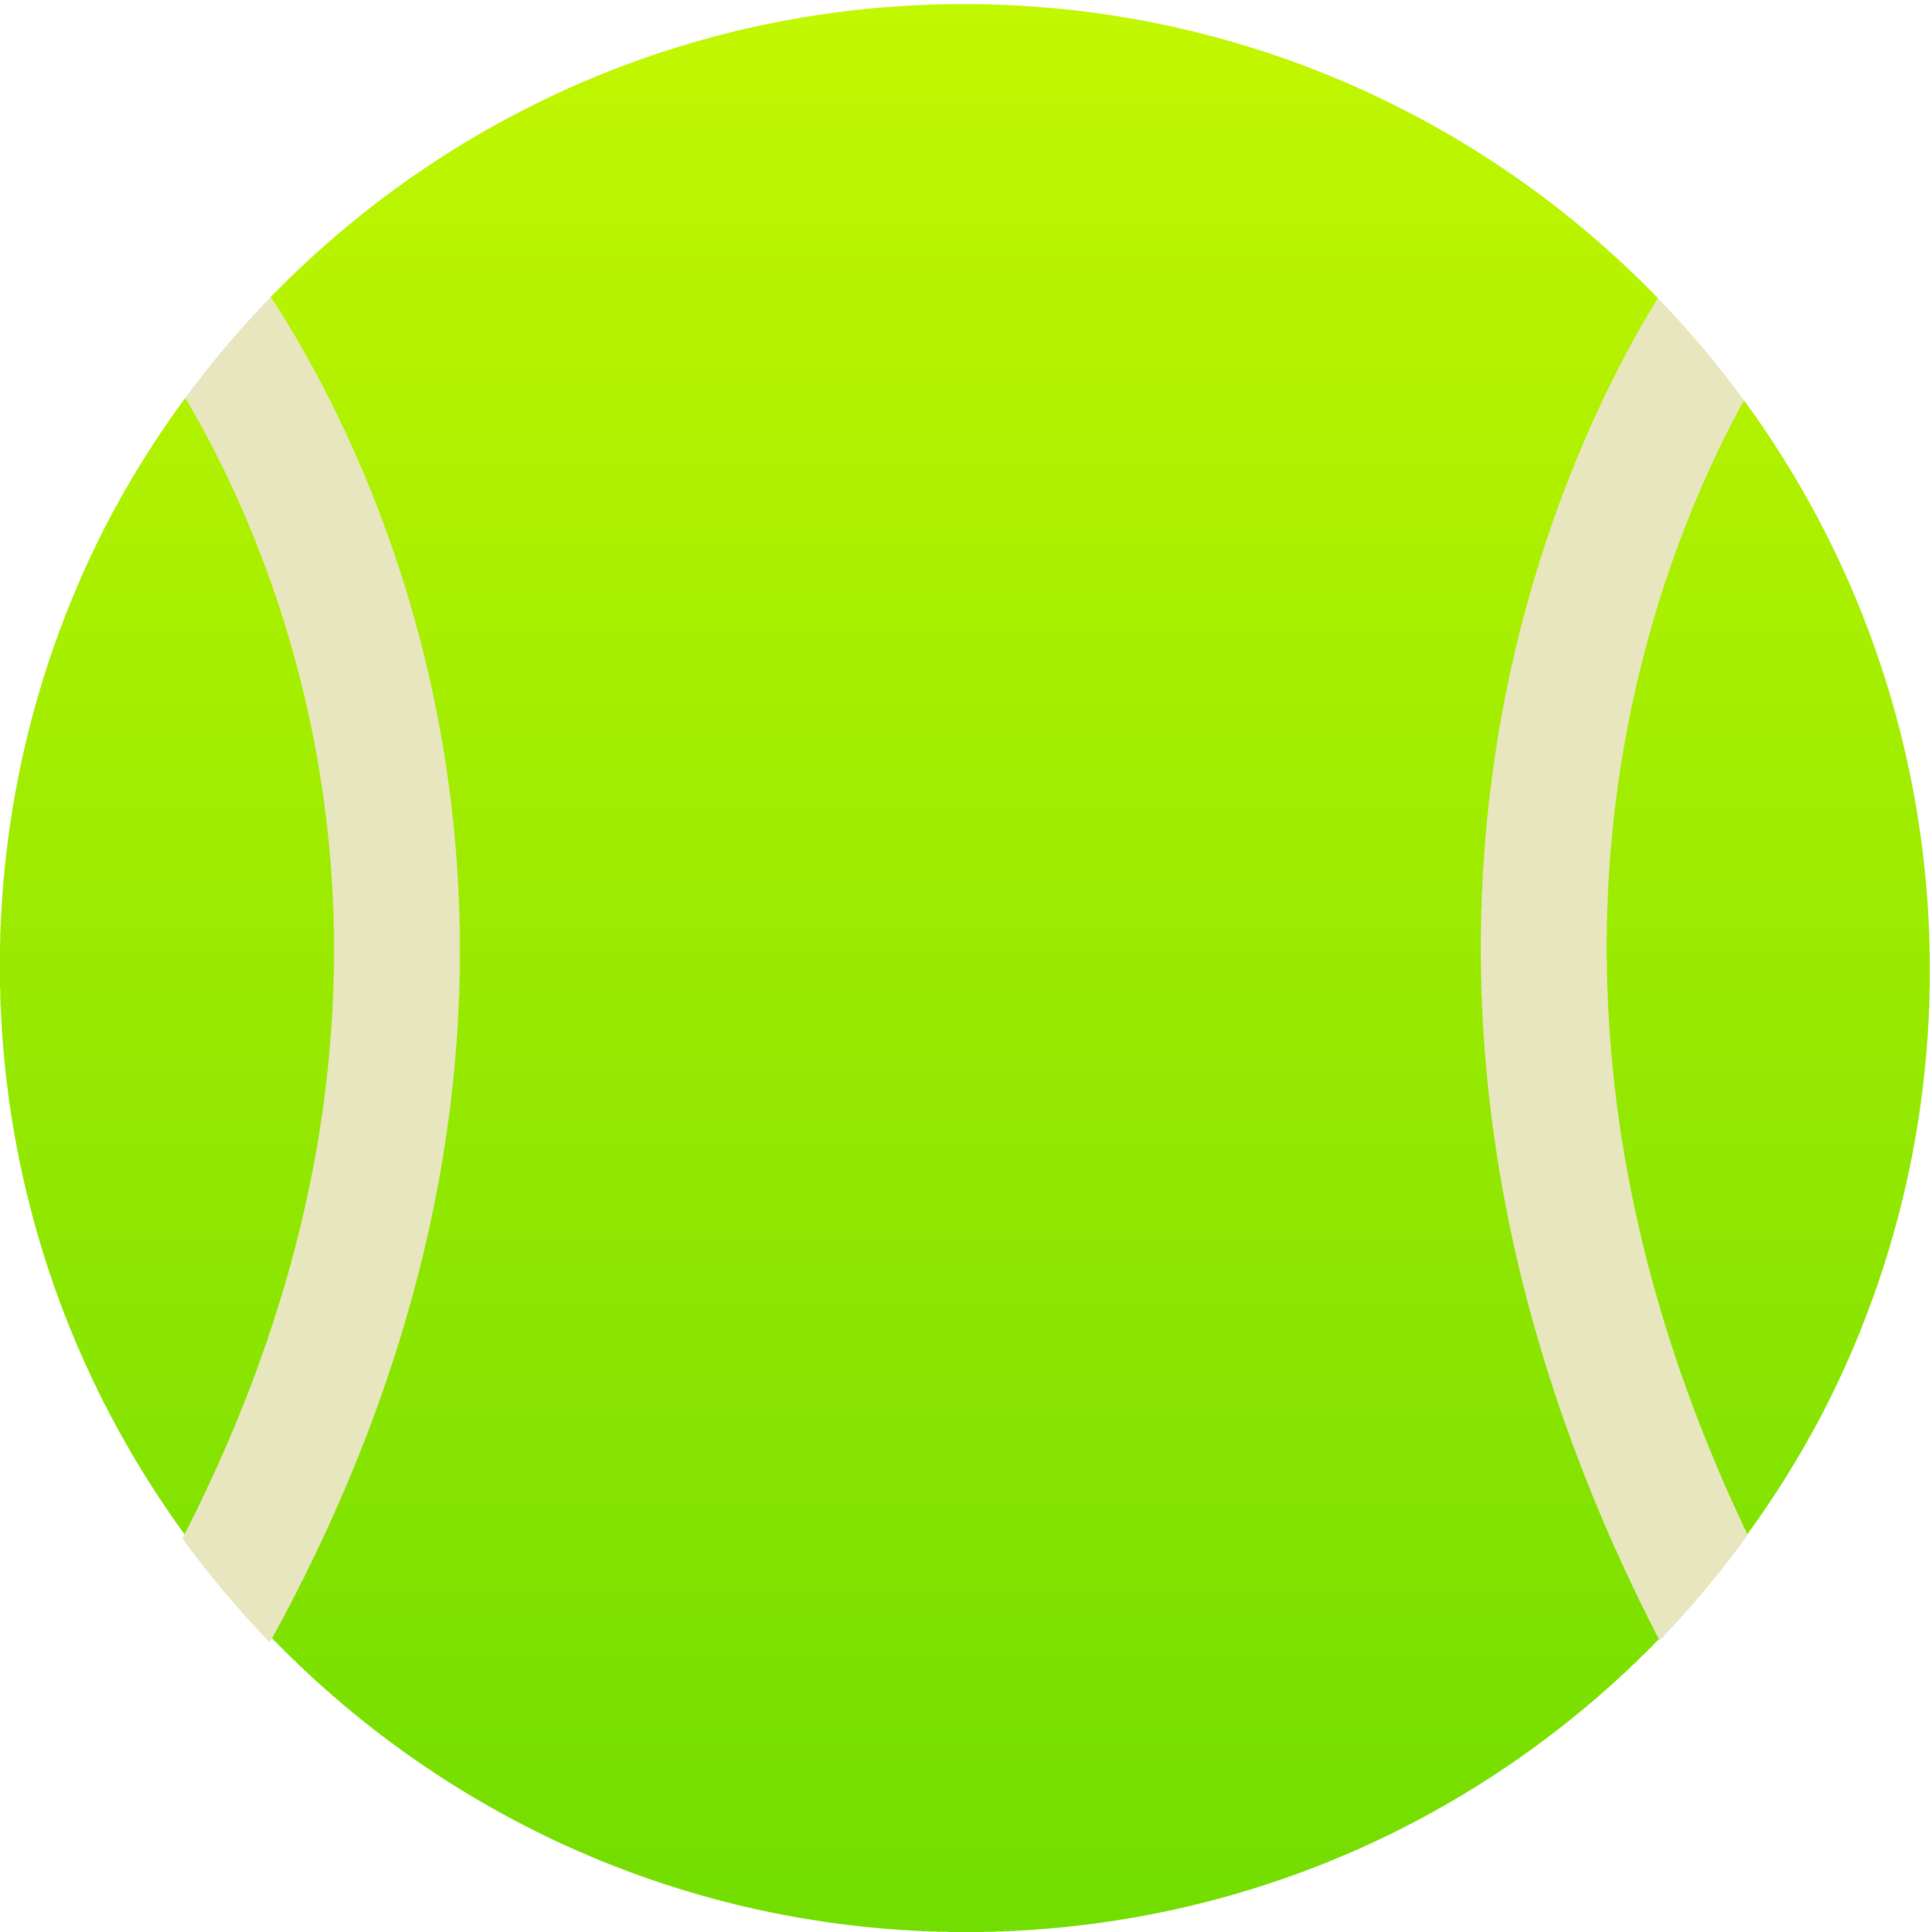 Tennis Ball Drawing - ClipArt Best